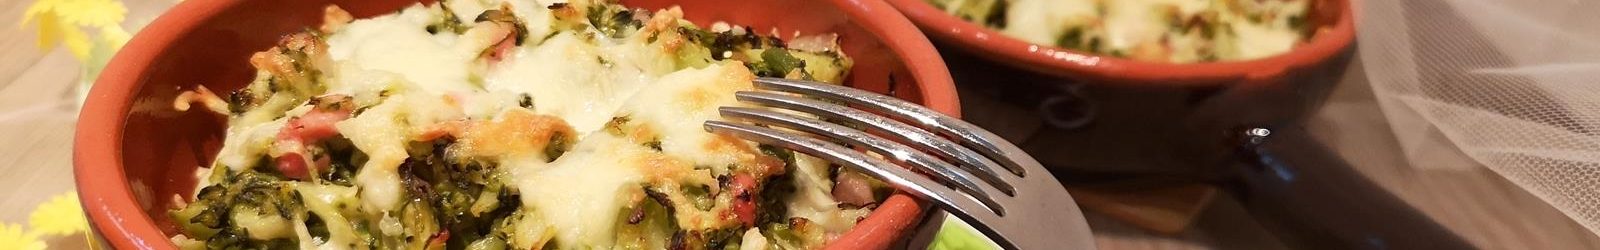 Broccoli al forno con pancetta affumicata e mozzarella la ricetta